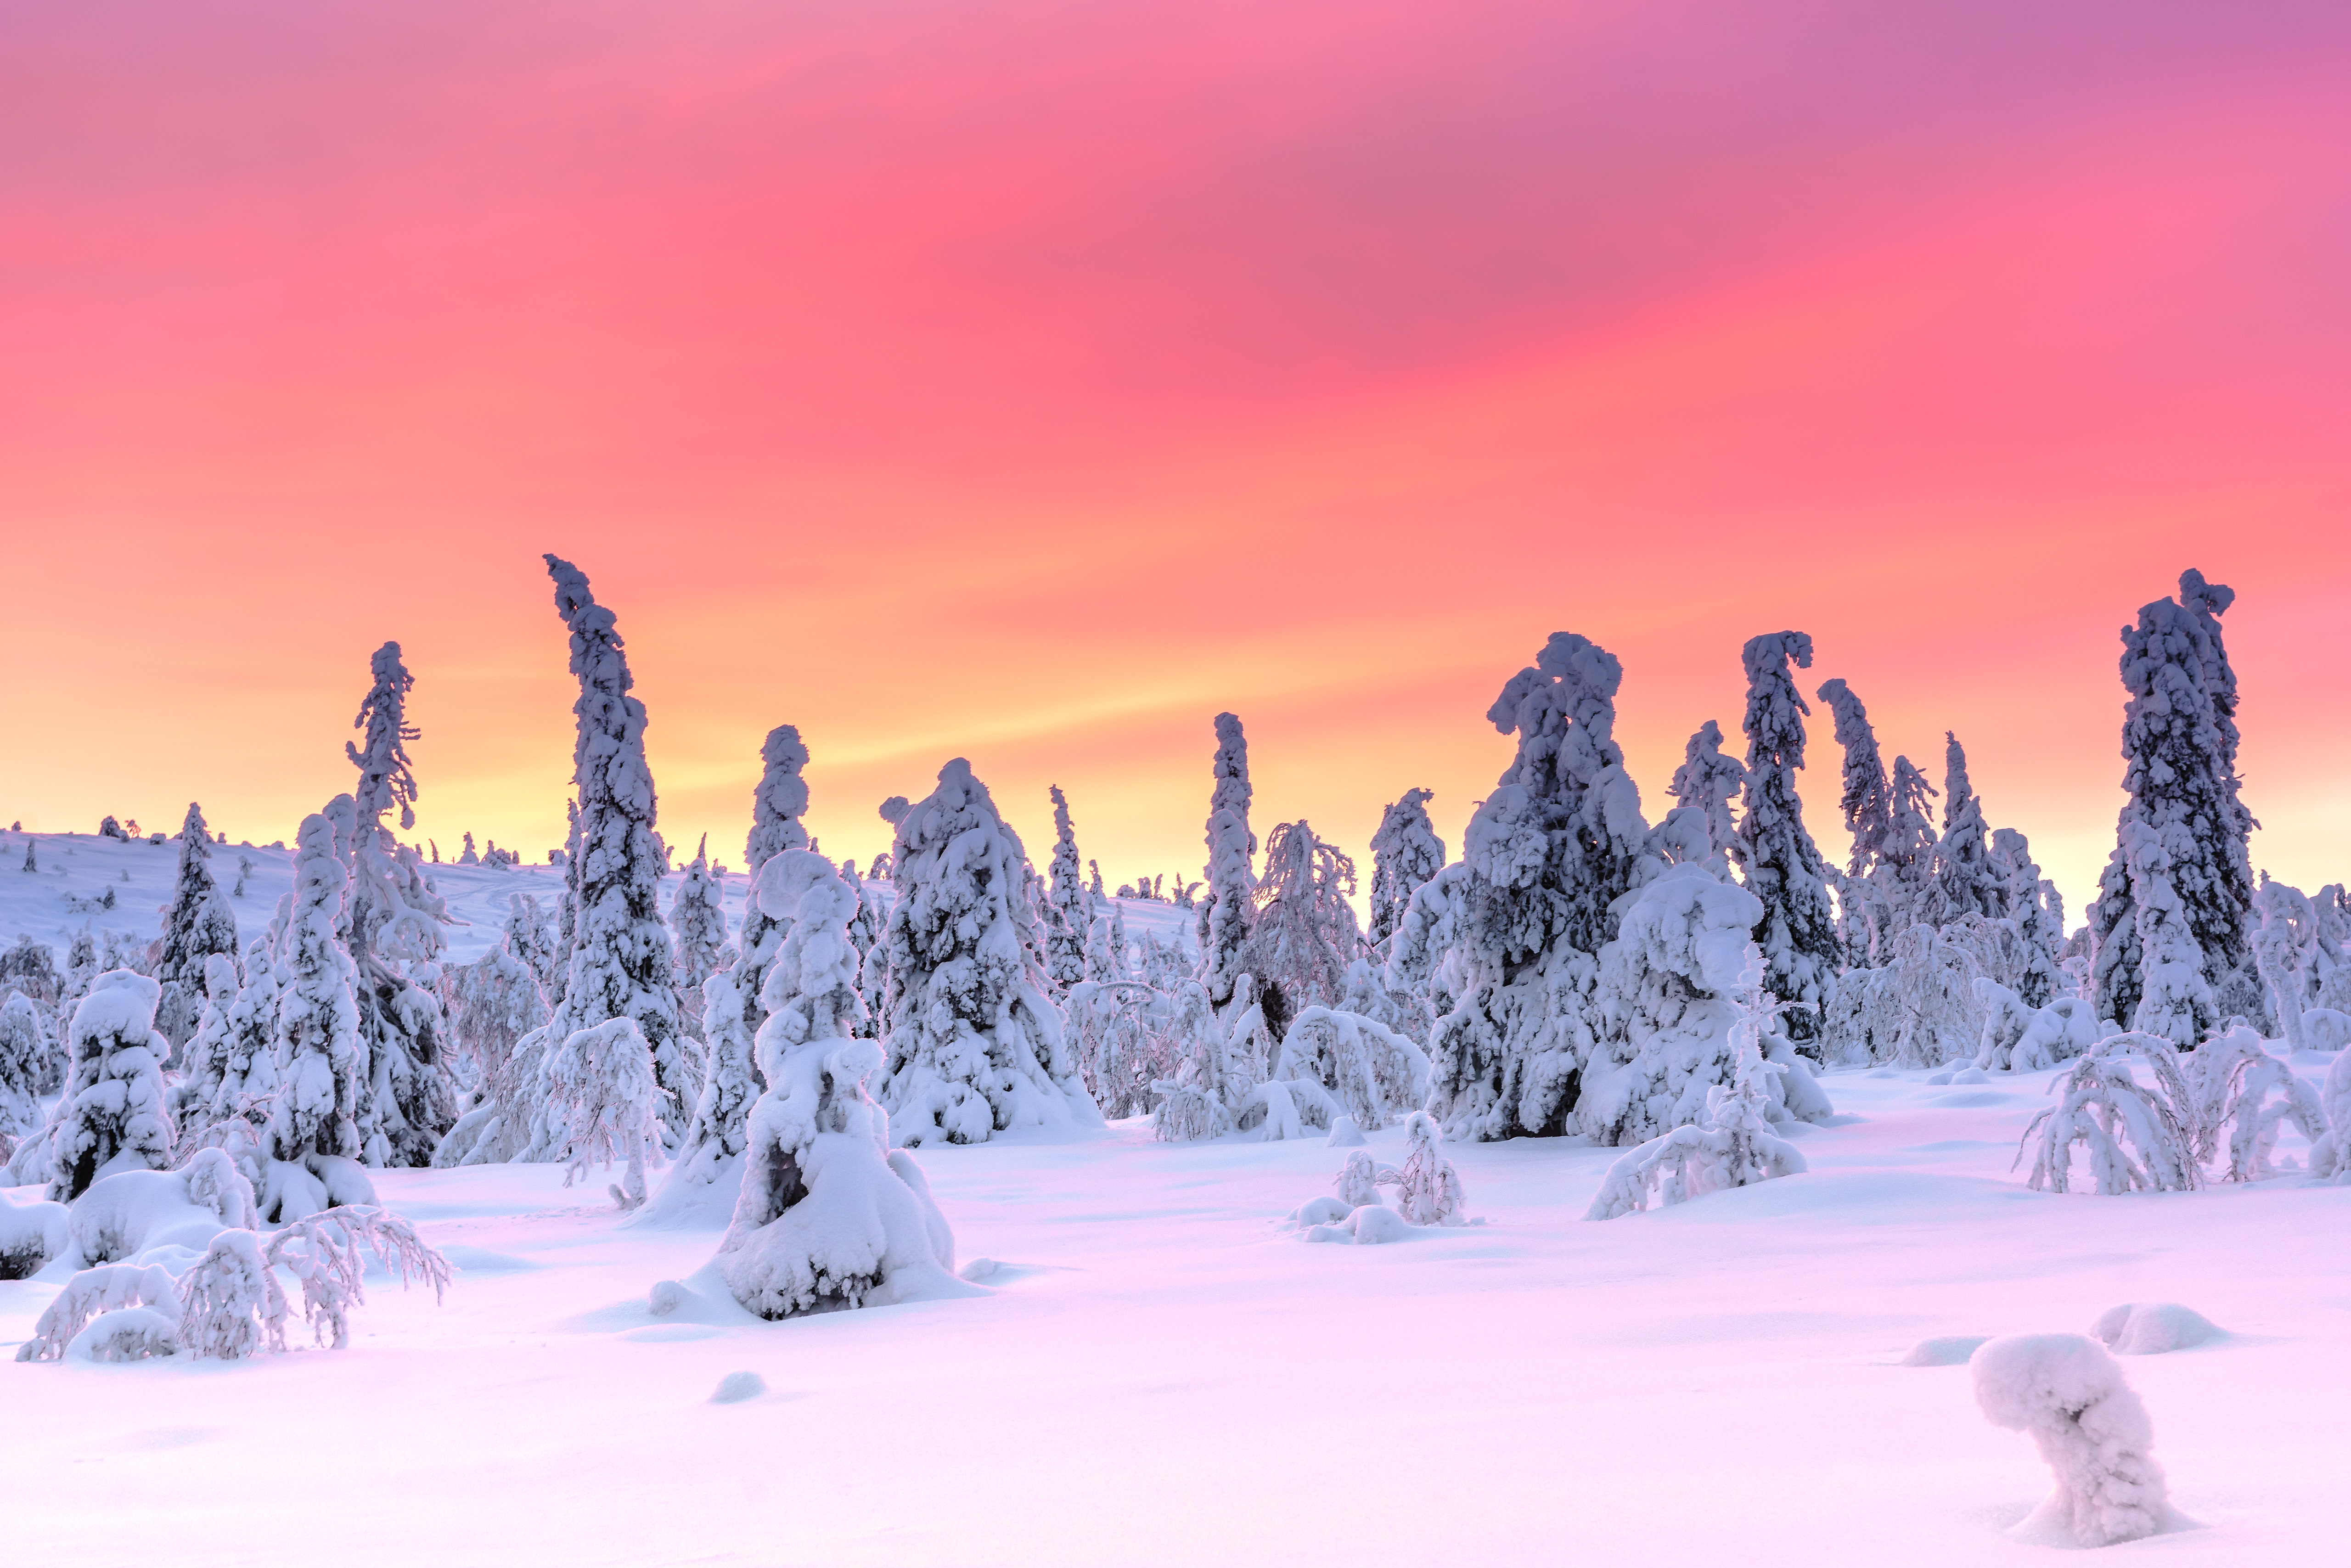 Скачать обои бесплатно Зима, Закат, Снег, Земля/природа картинка на рабочий стол ПК